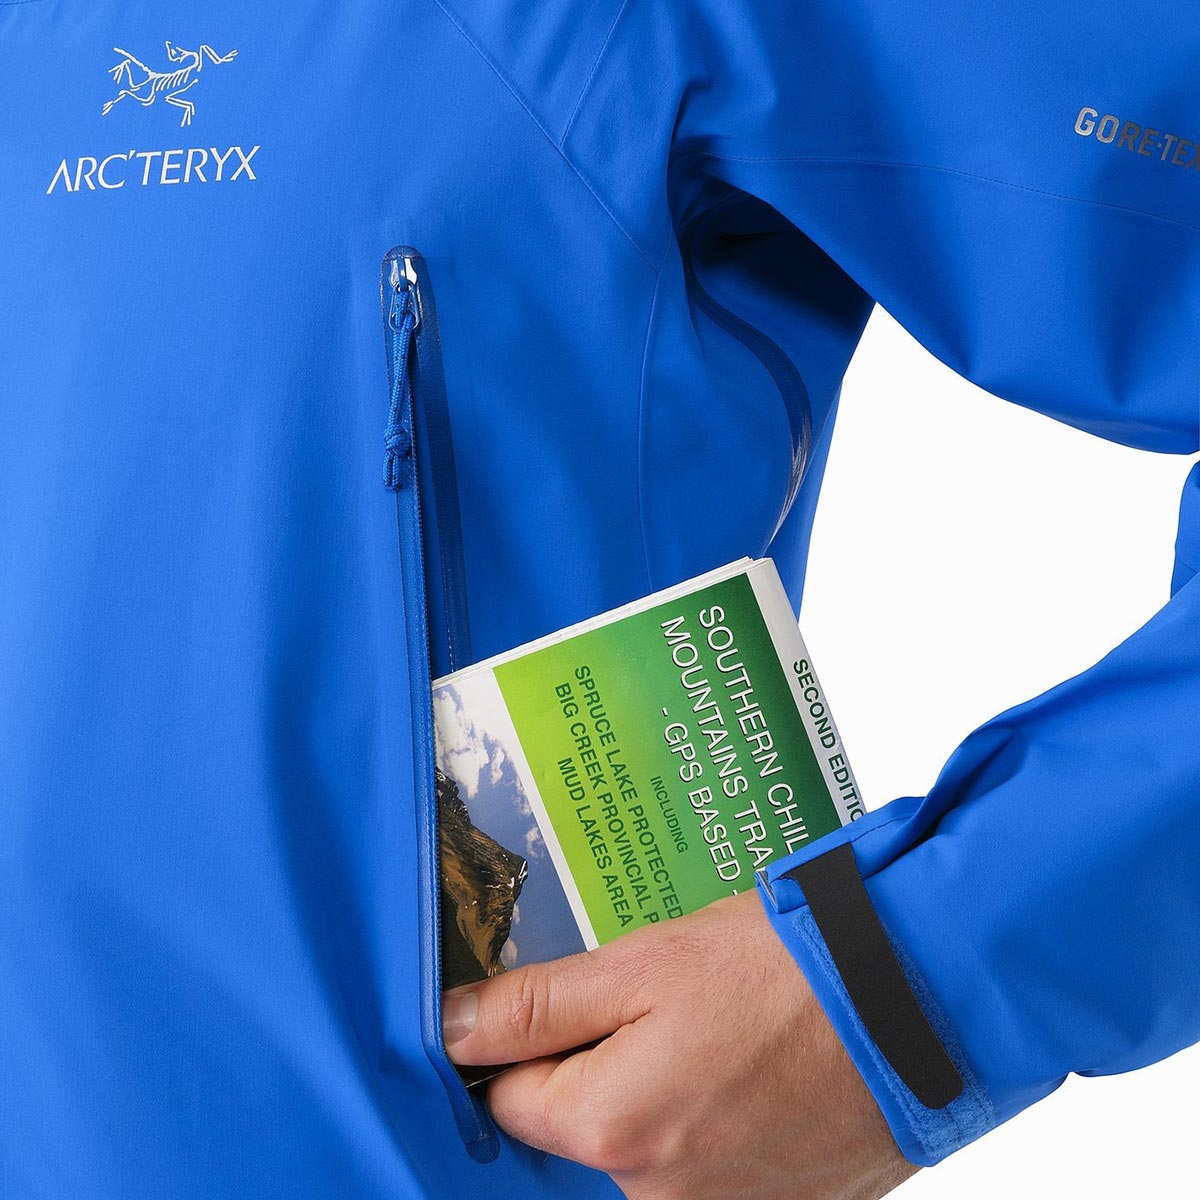 Arc'teryx Zeta AR Jacket, men's, discontinued Fall 2018 colors 